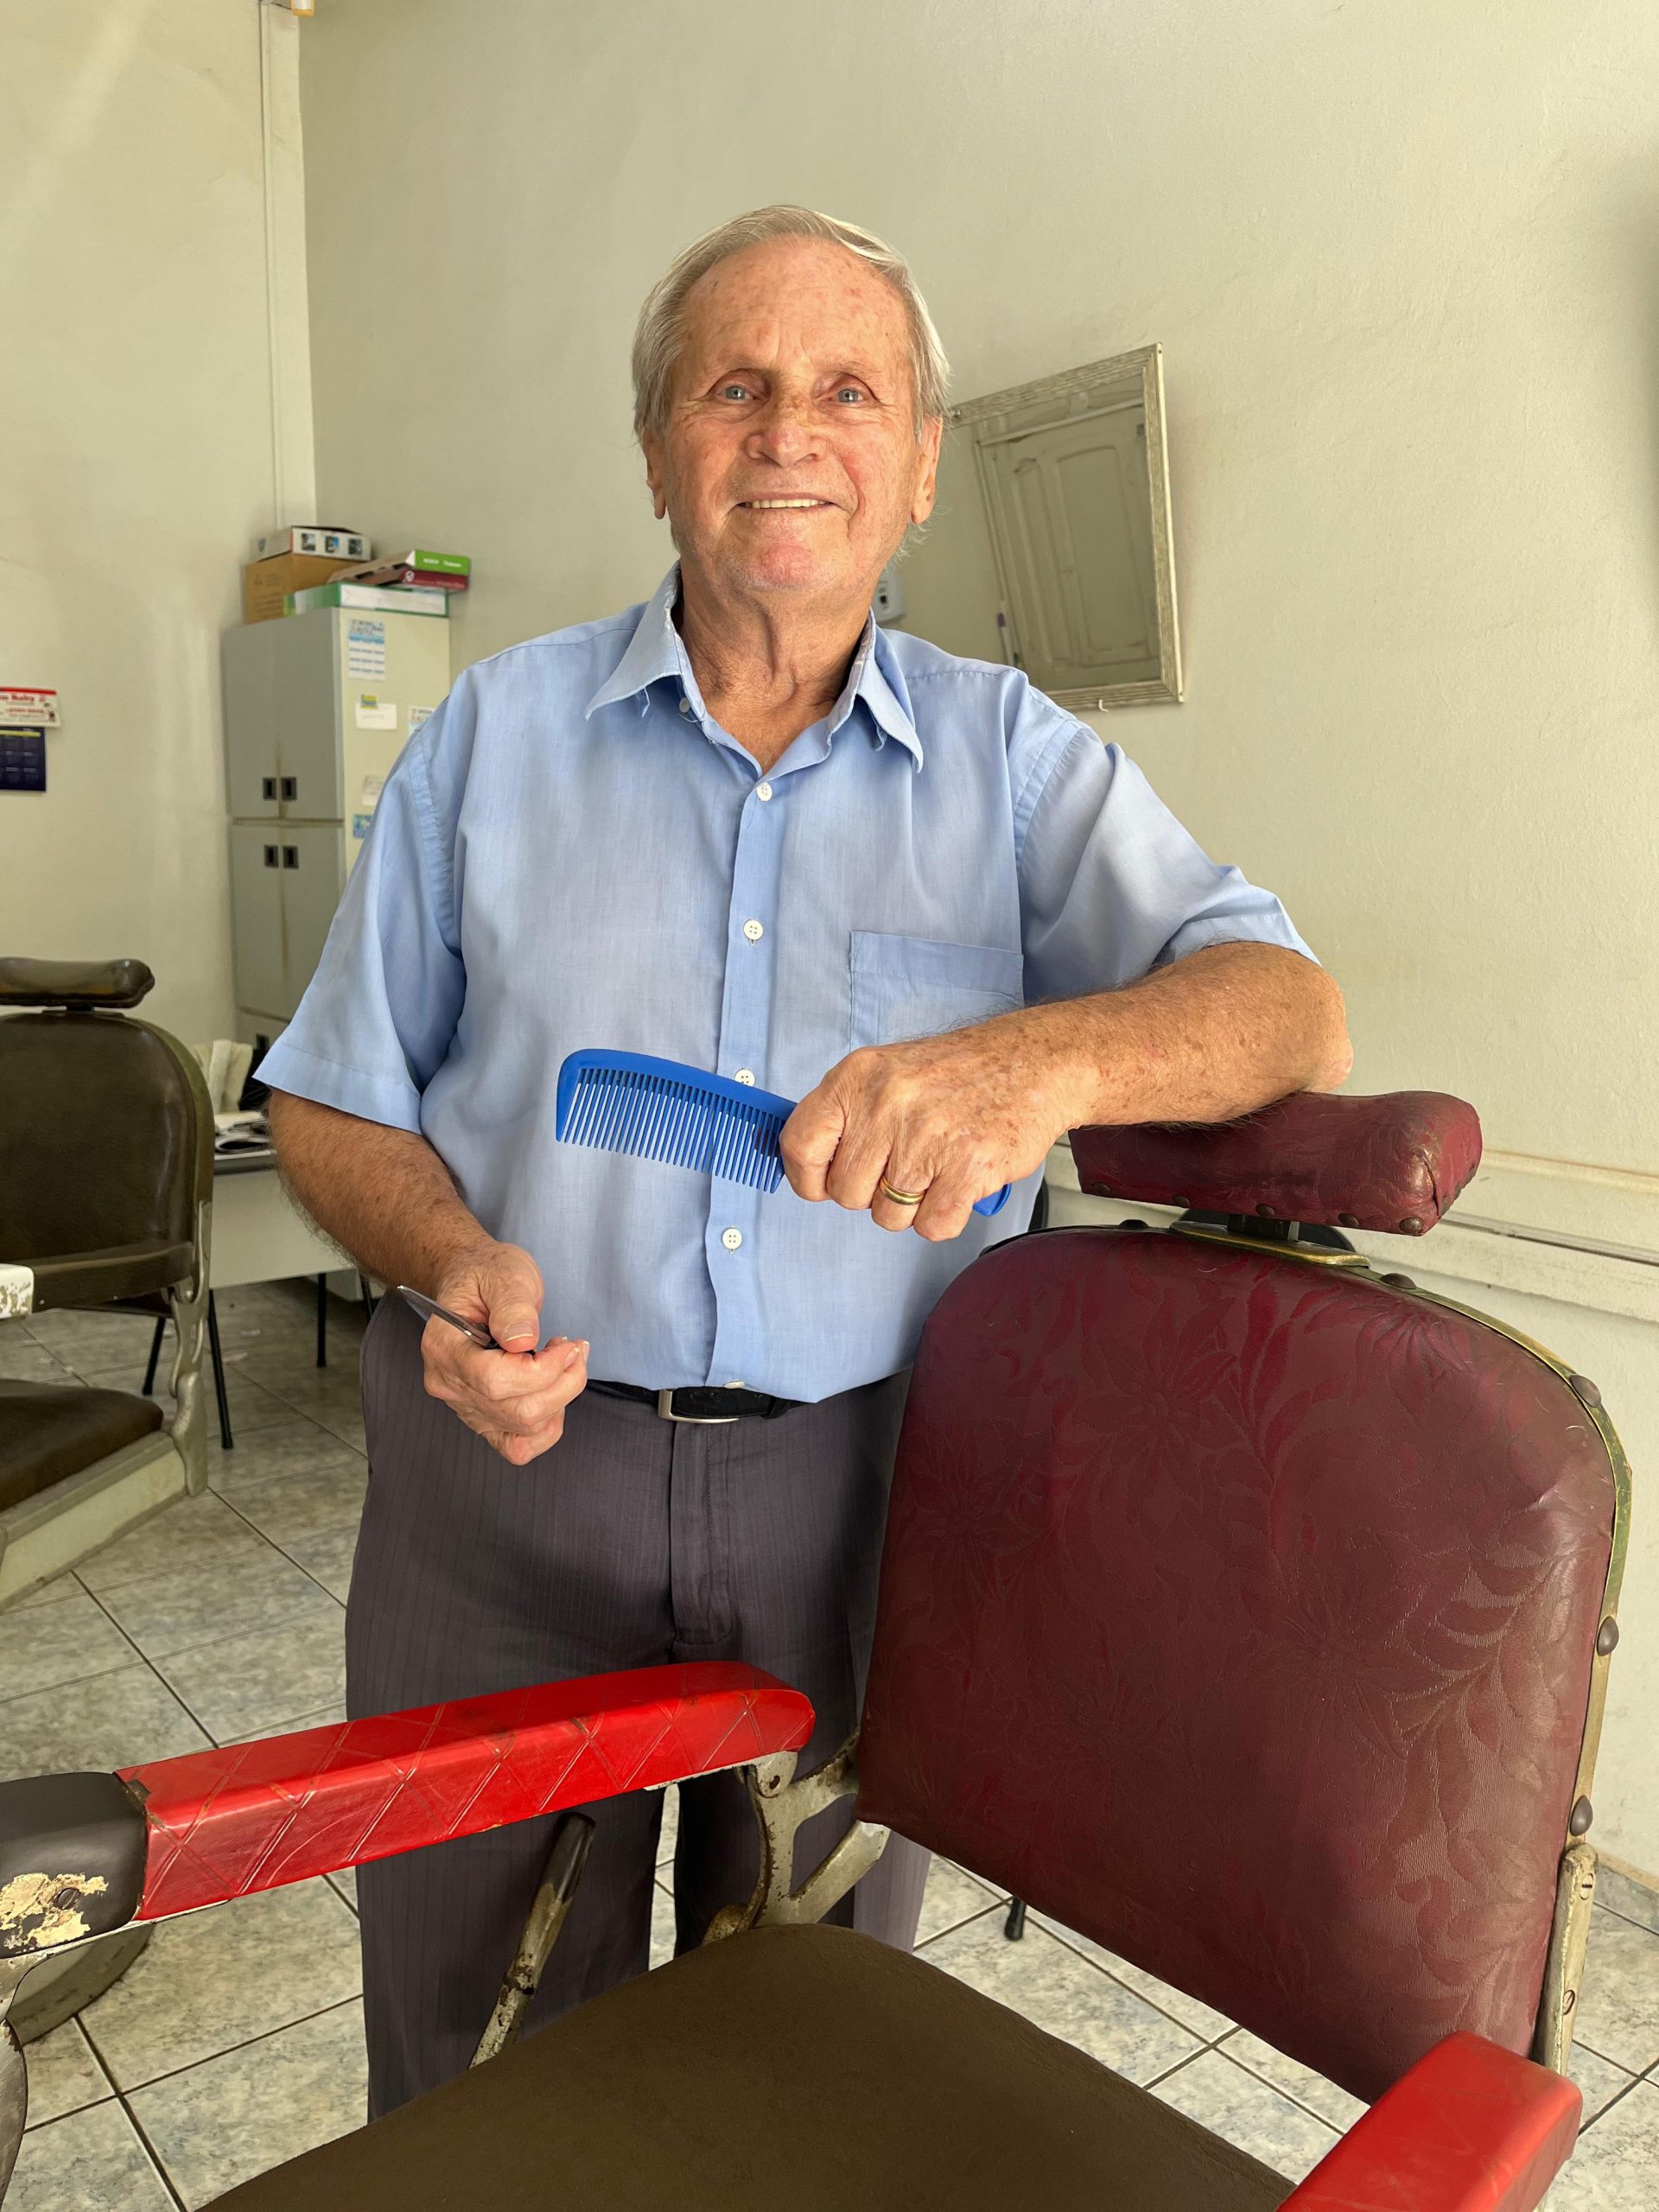 ‘Ainda trabalho porque sou apaixonado pela profissão. Espero continuar atendendo por muito tempo’, conta Dirceu Agassi, barbeiro há mais de 57 anos